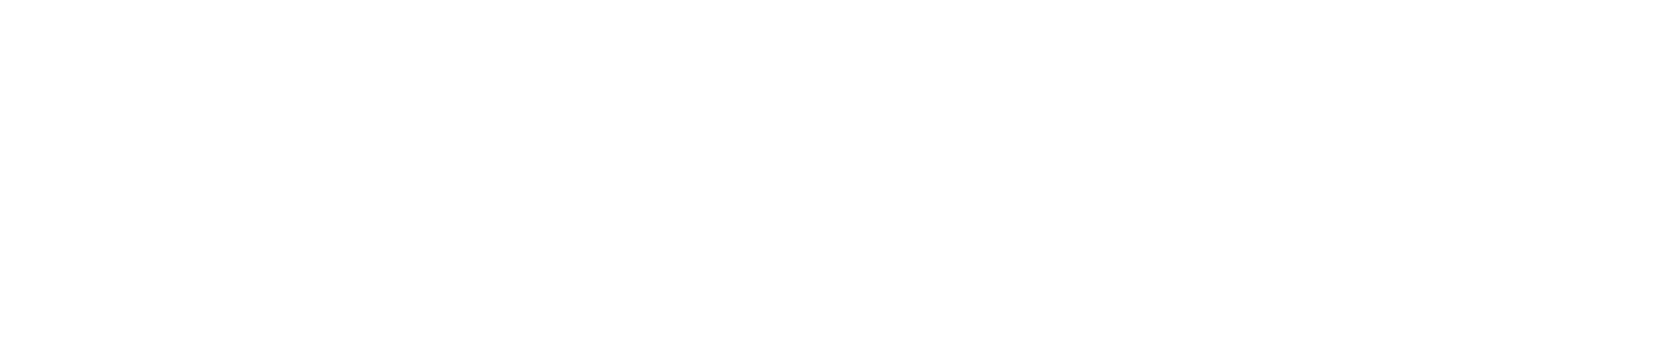 KoWMasters - Kings of War UK Organised Play